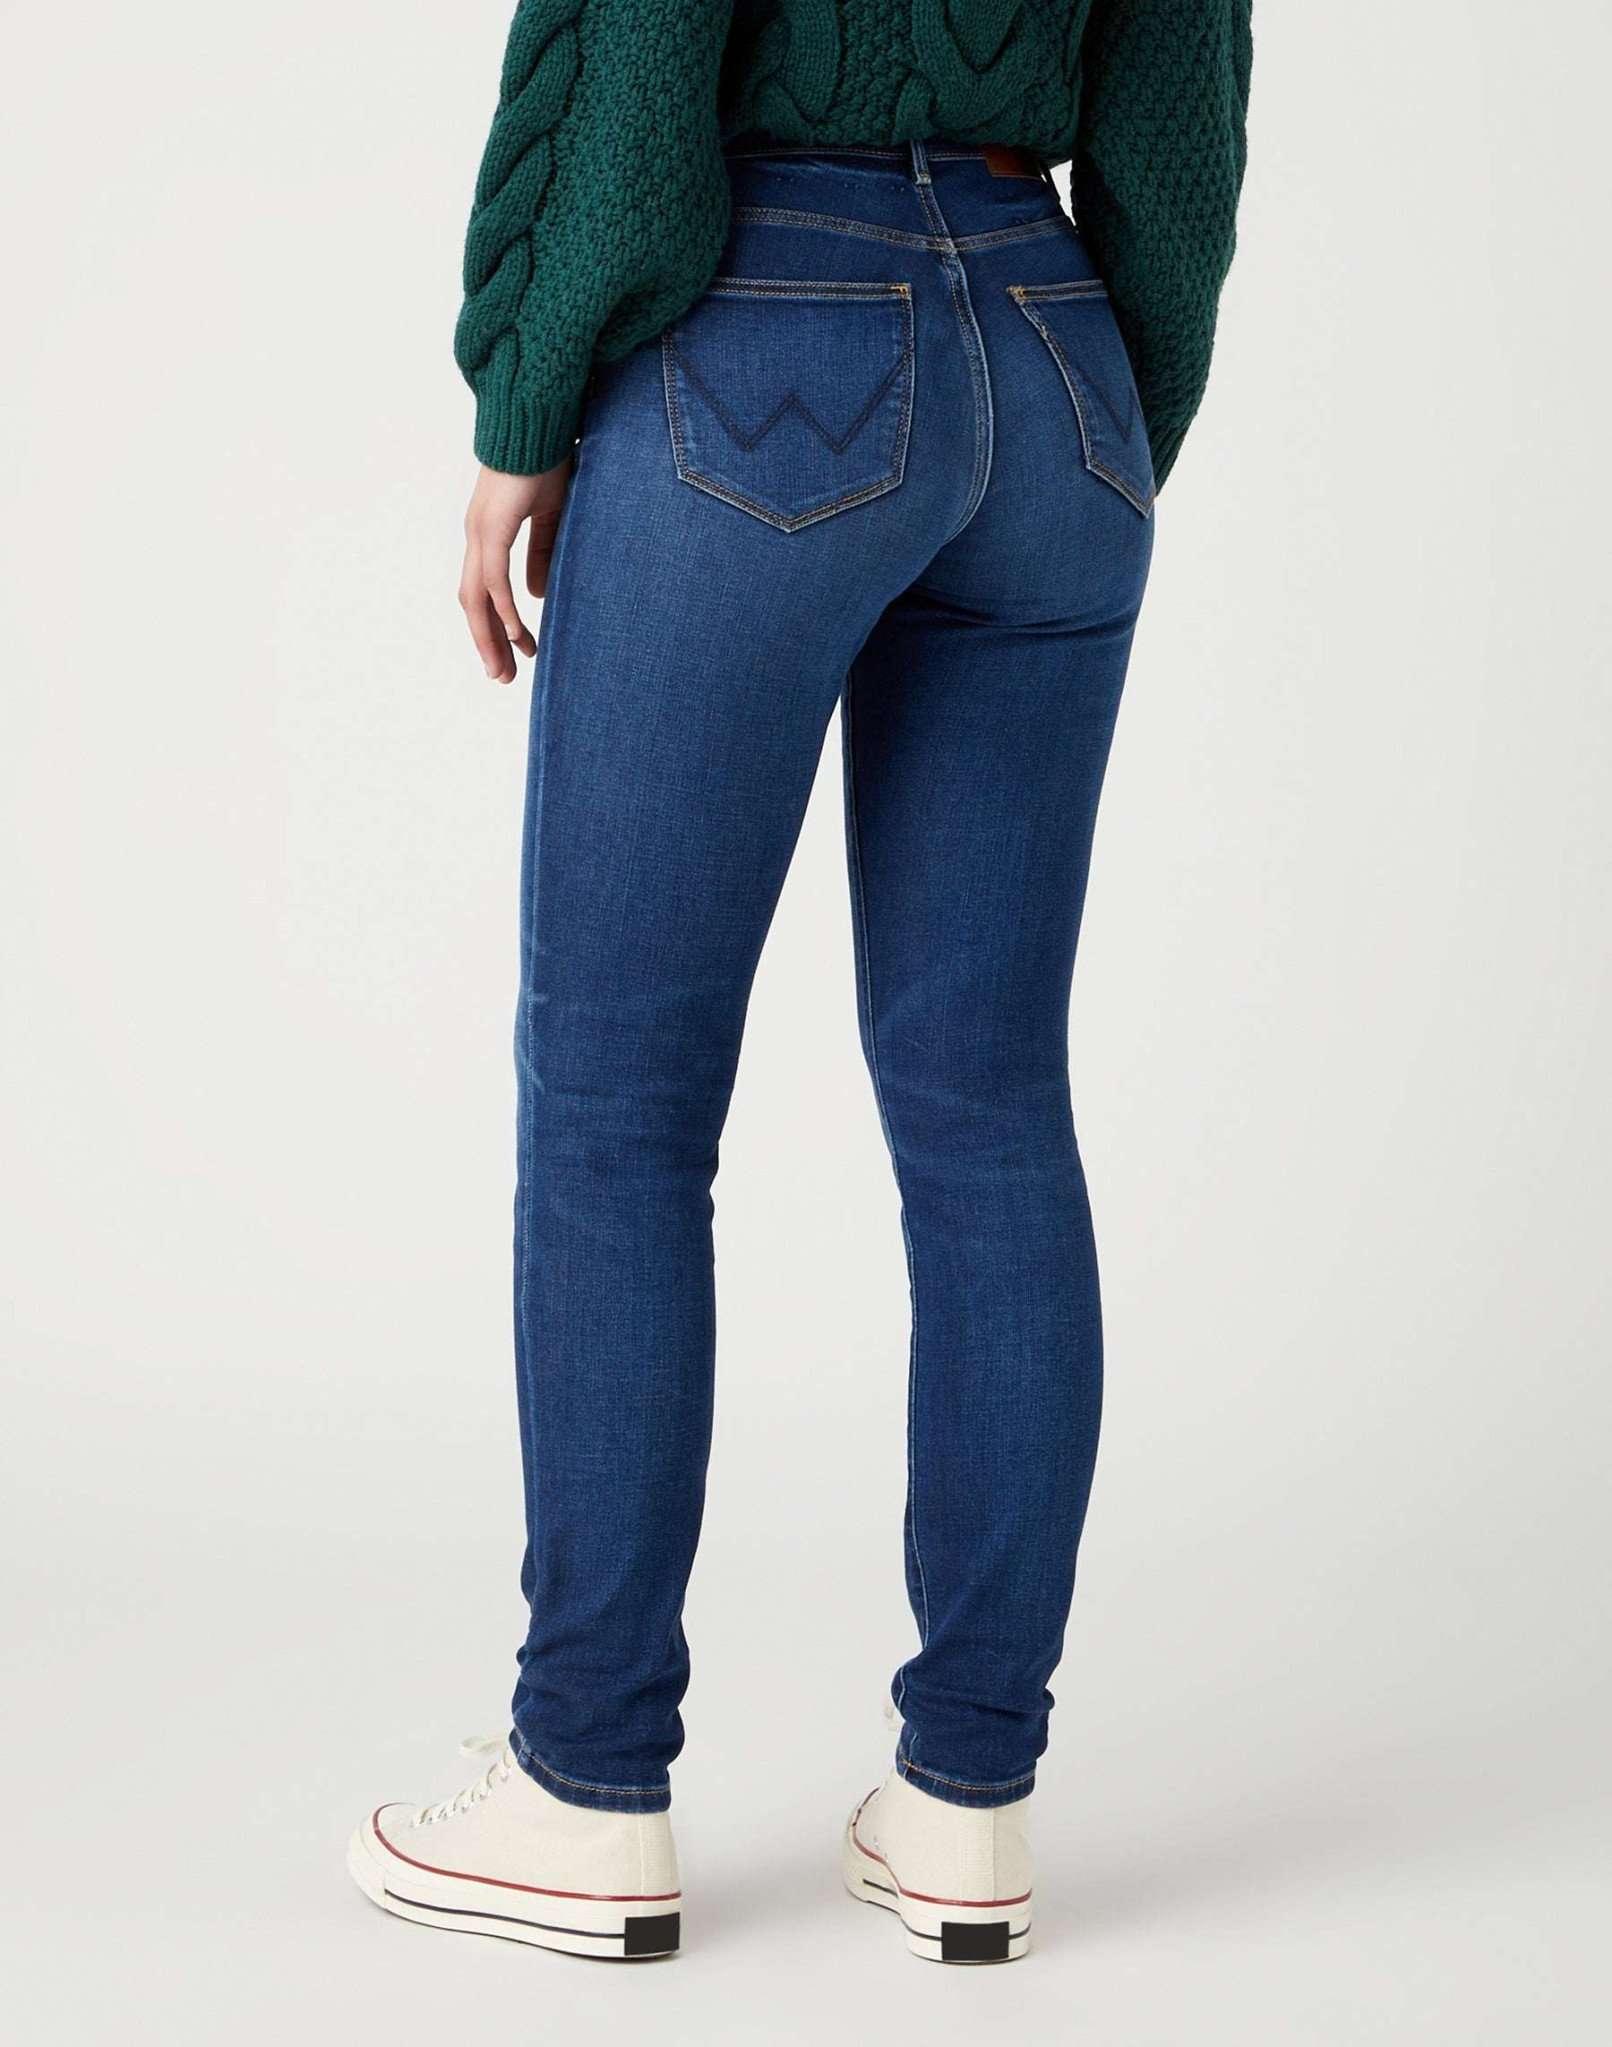 High Skinny in Dana Jeans Wrangler   